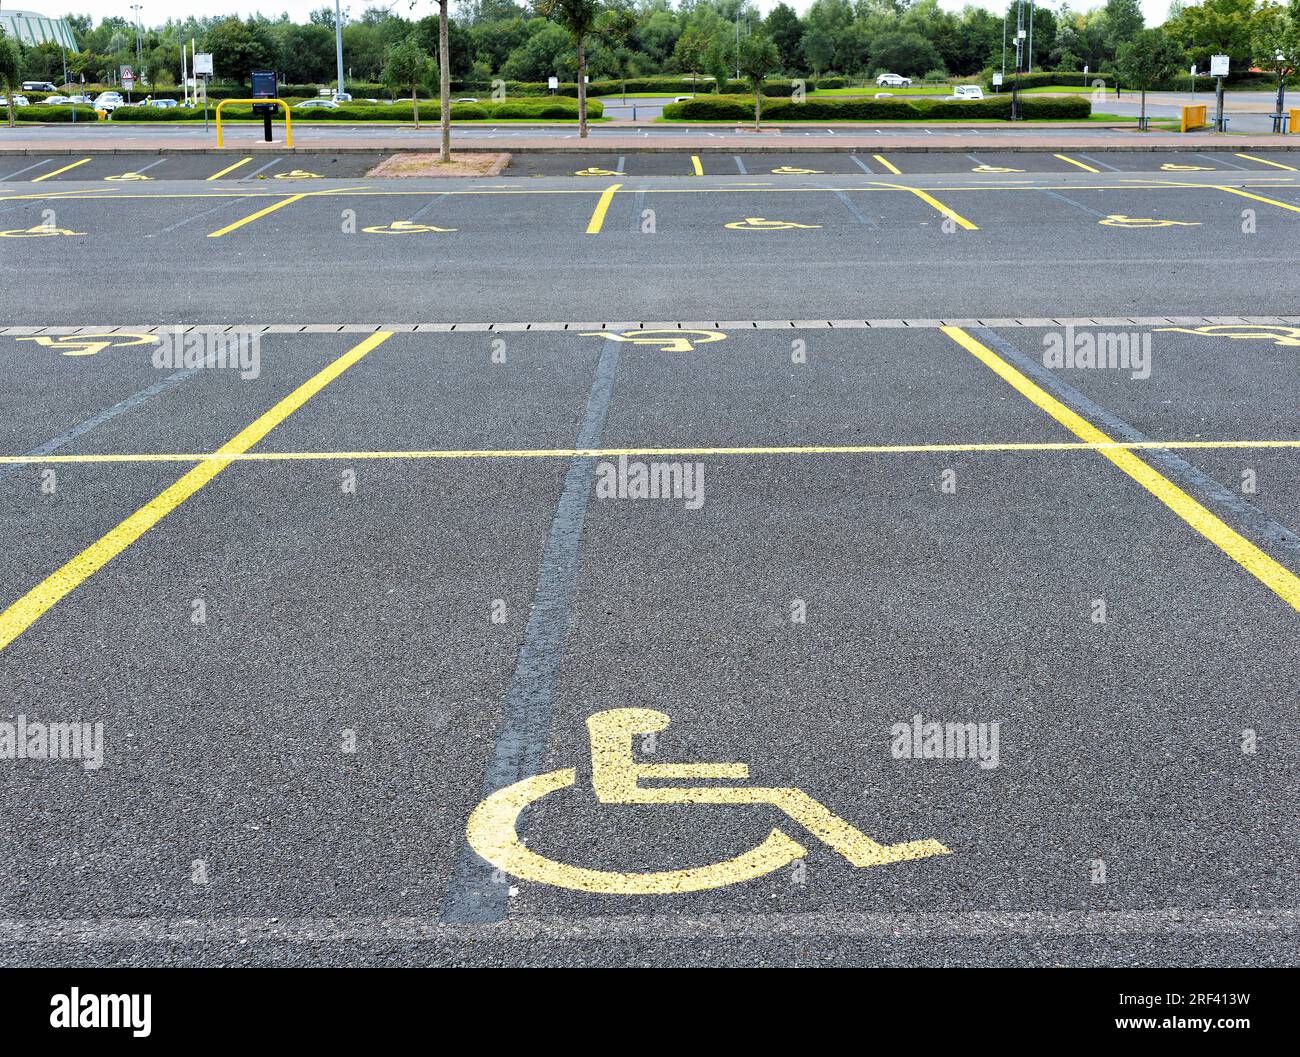 parking avec places de parking réservées aux personnes à mobilité réduite affichant le logo peint en orange sur le sol Banque D'Images